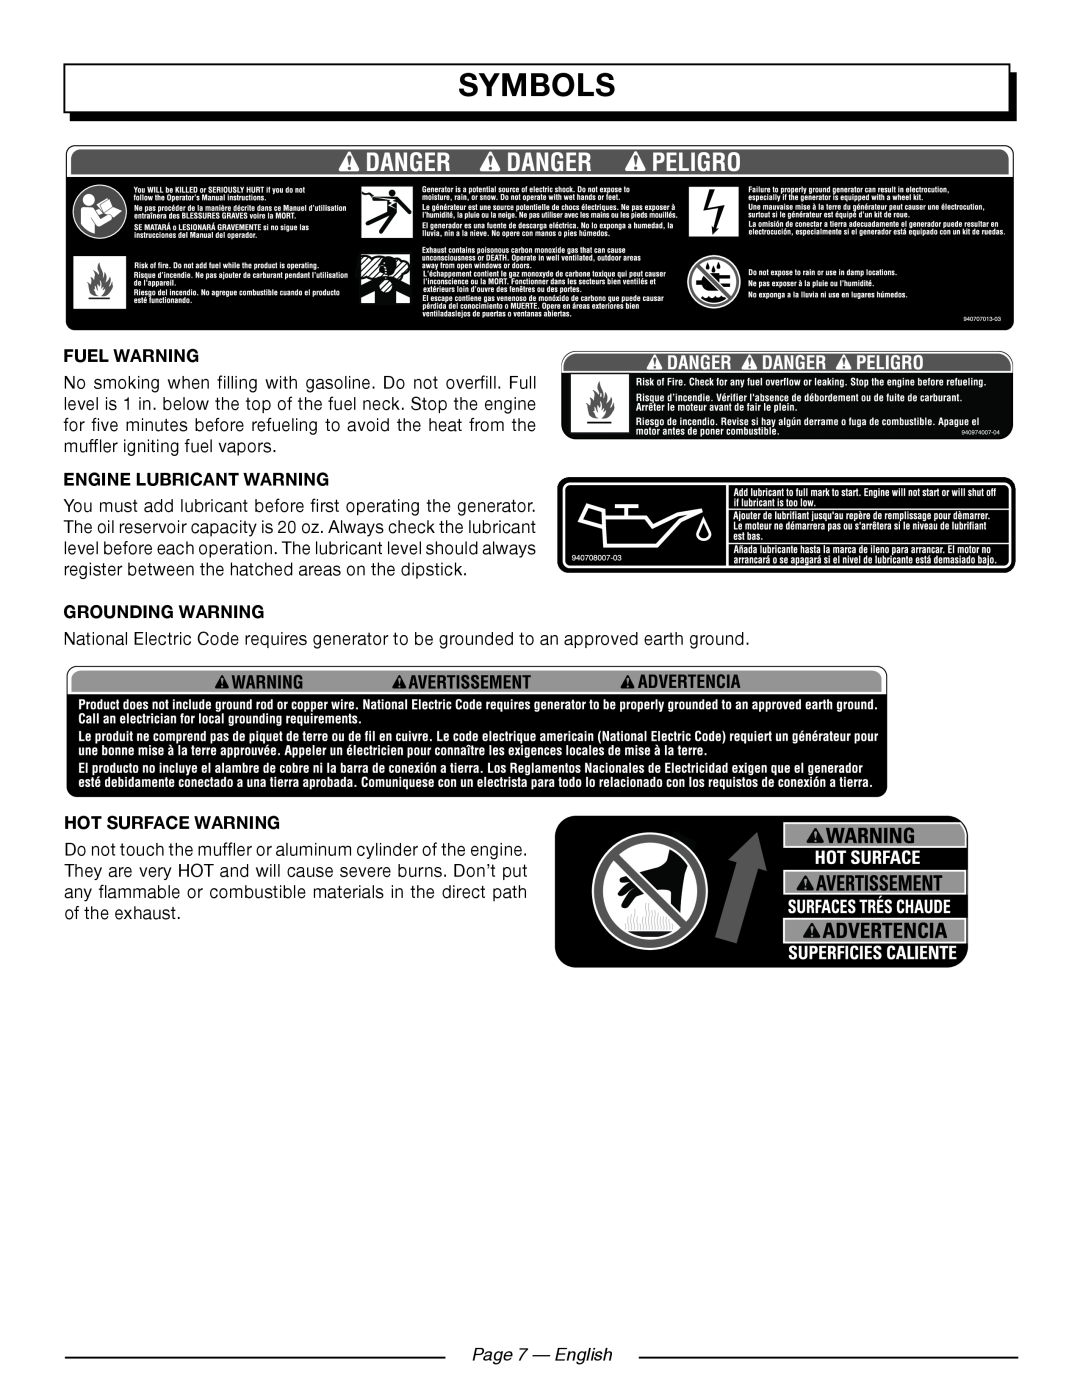 Homelite UT902250 manuel dutilisation Page 7 — English, Symbols, Fuel Warning, Engine Lubricant Warning, Grounding Warning 